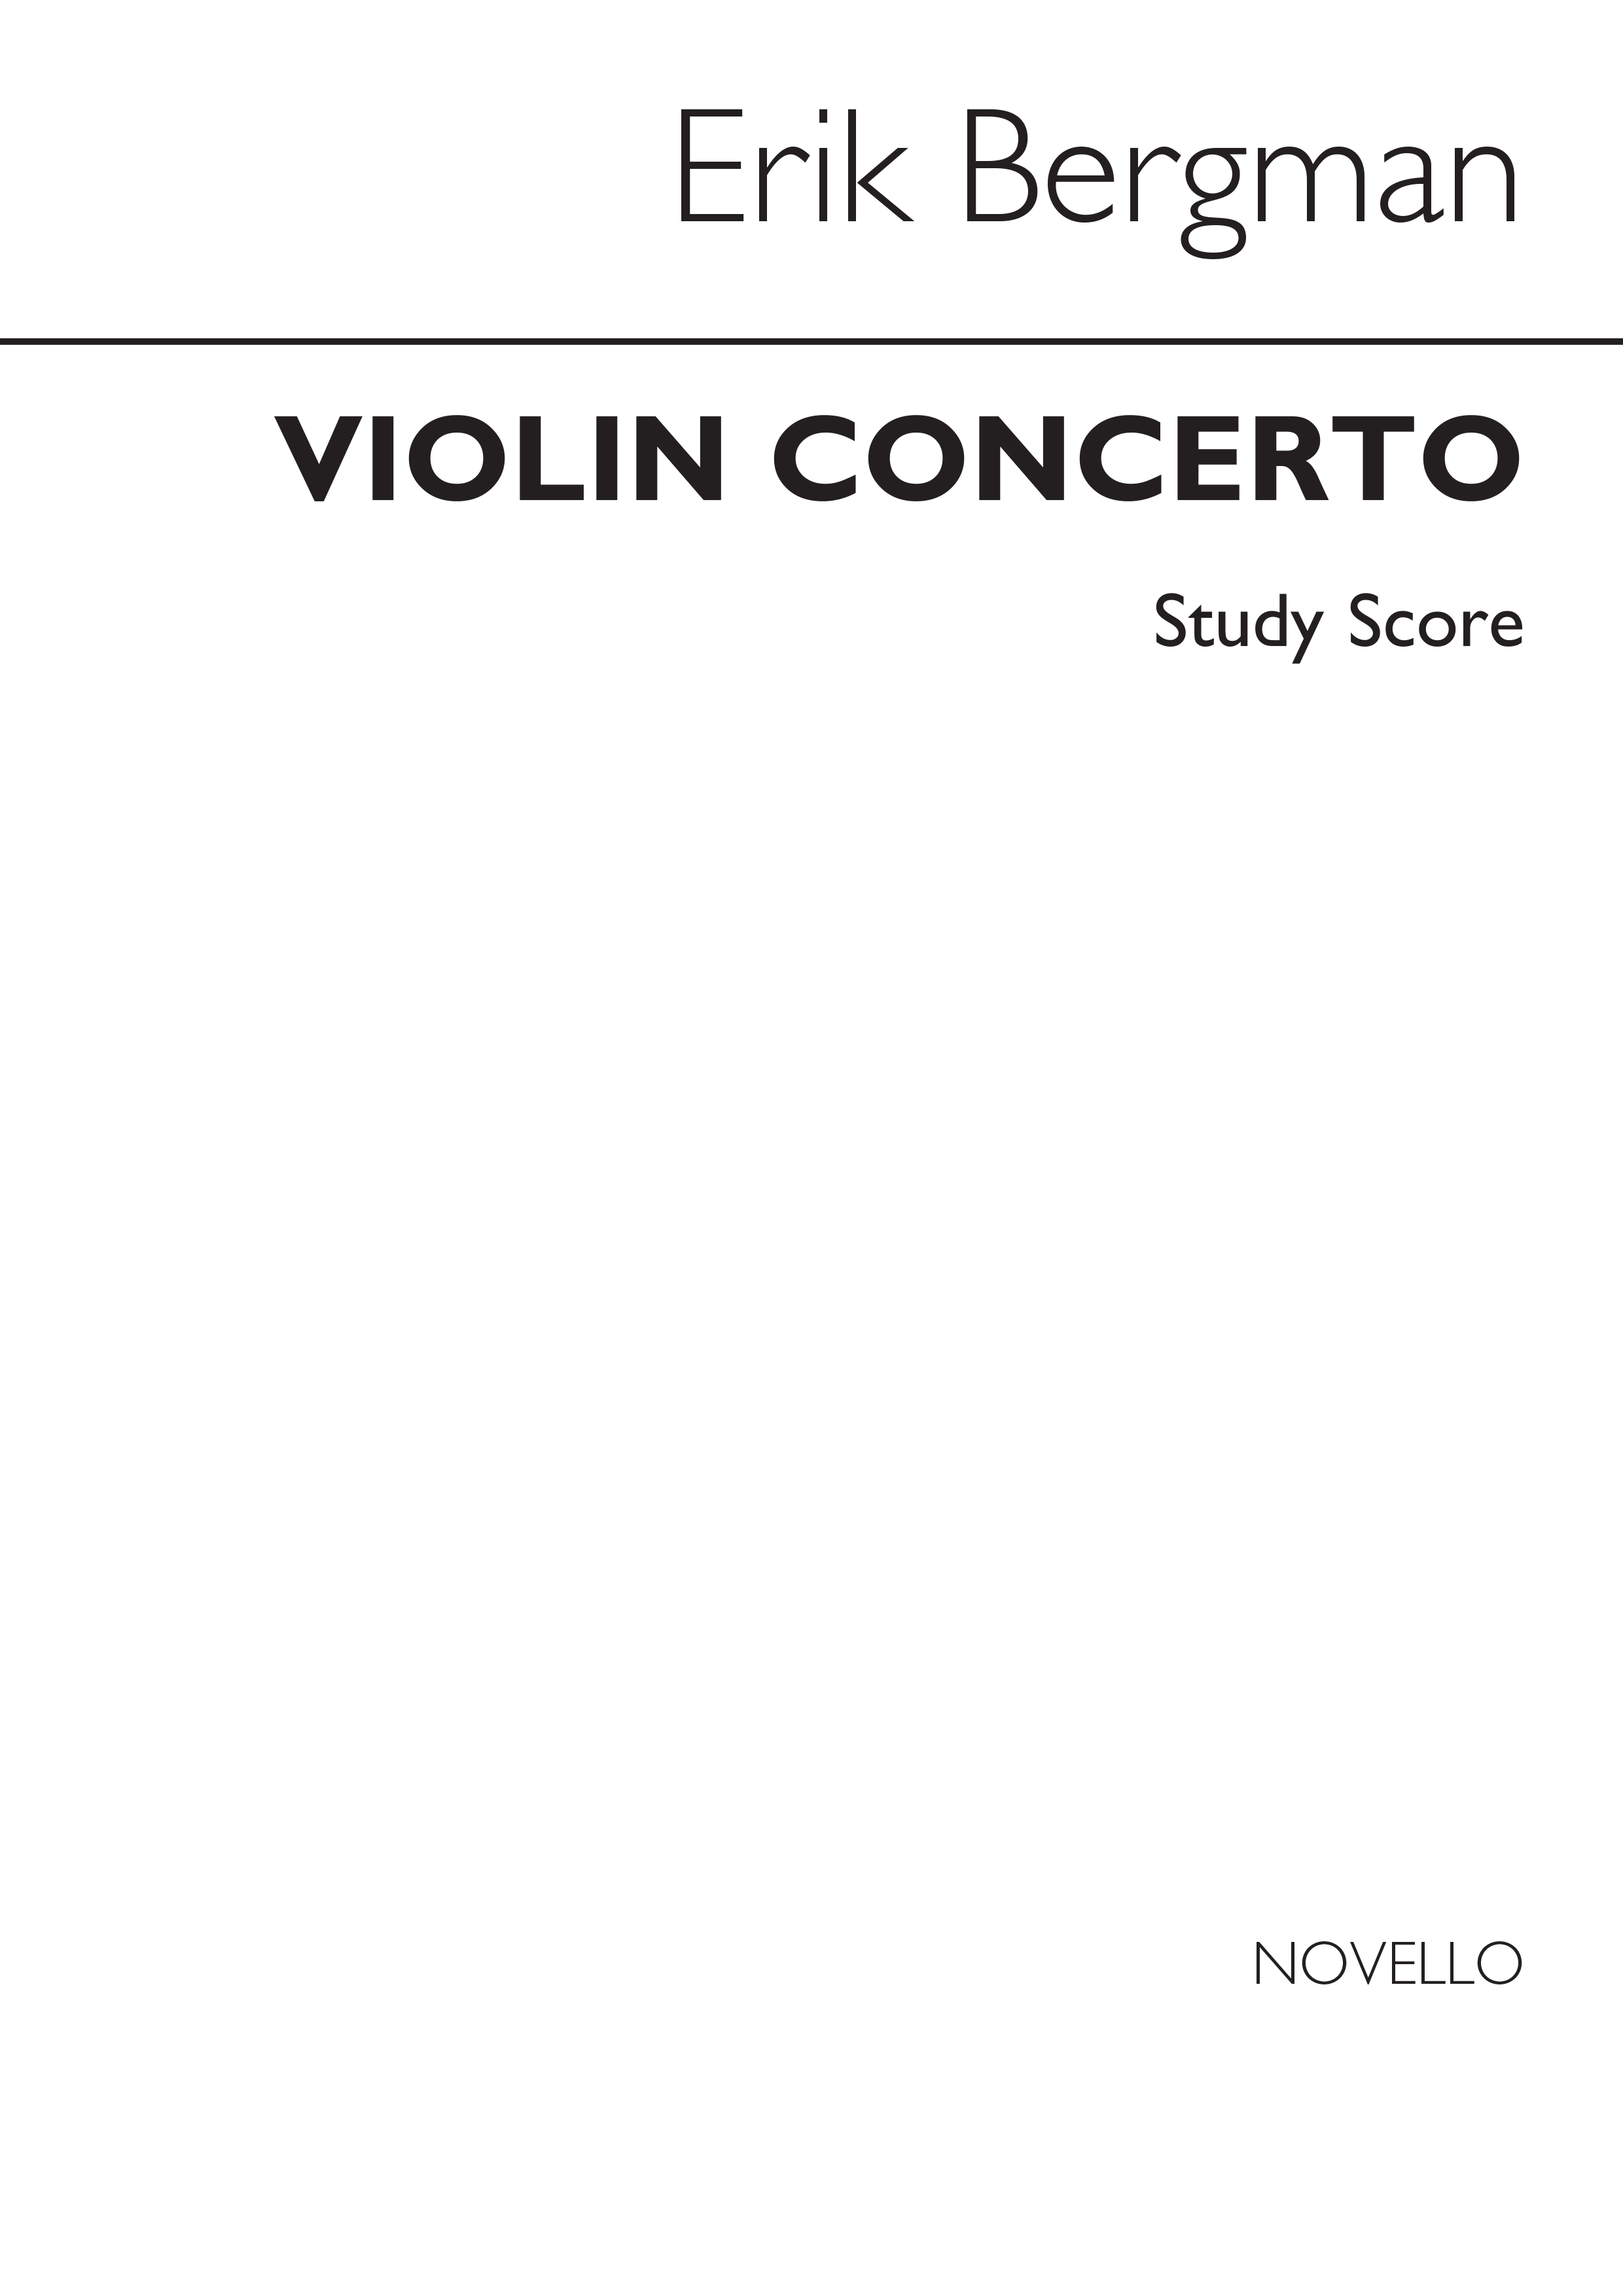 Bergman: Violin Concerto